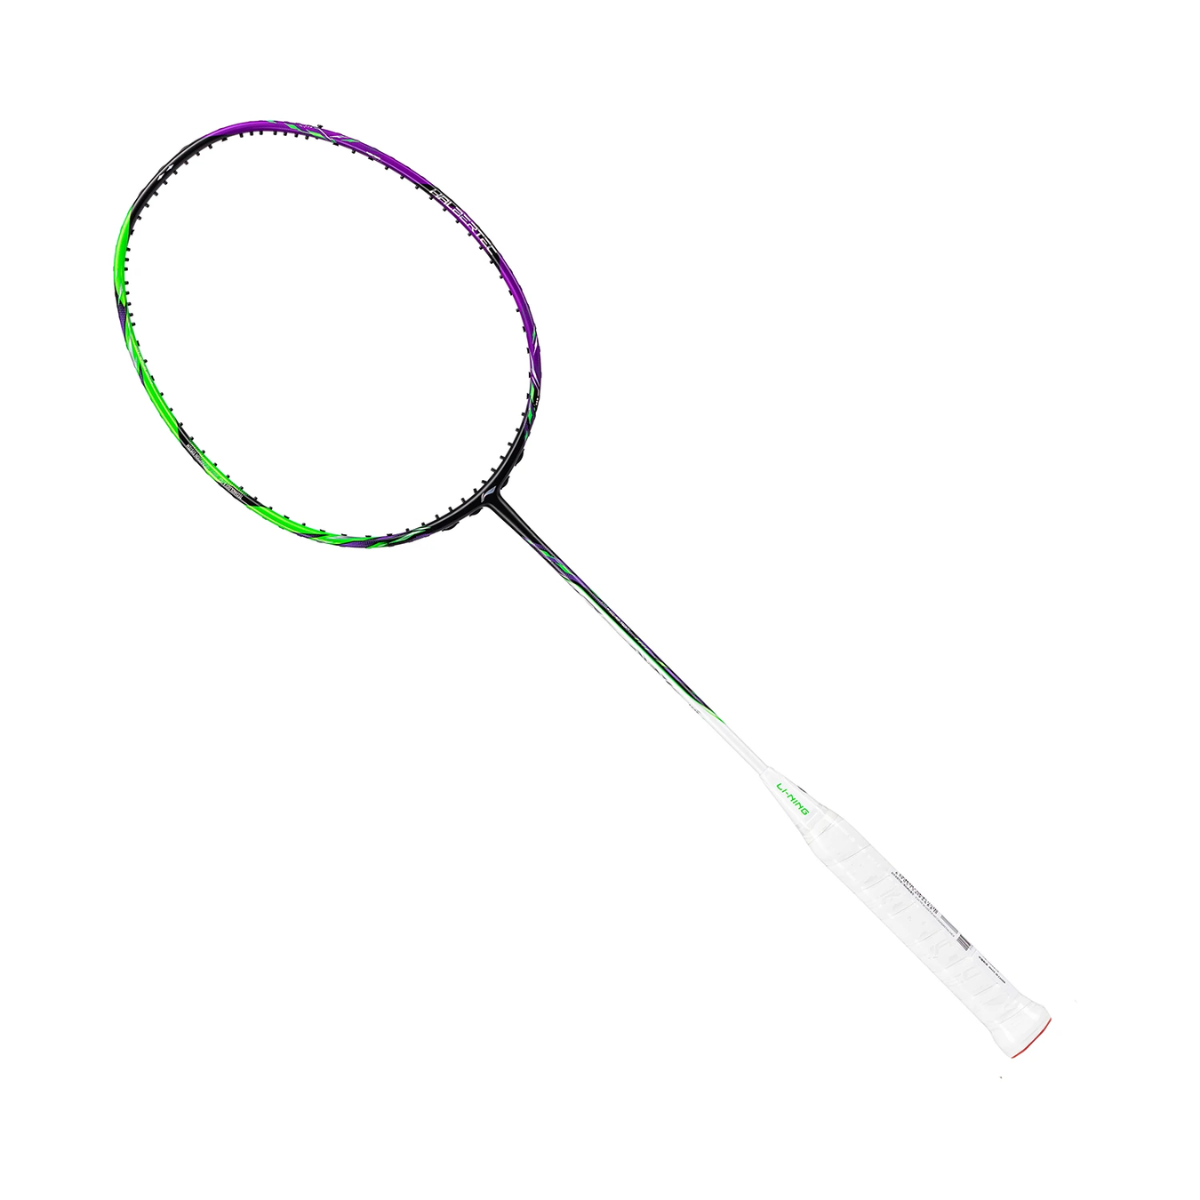 Lining Halbertec 9000 Unstrung Badminton Racket